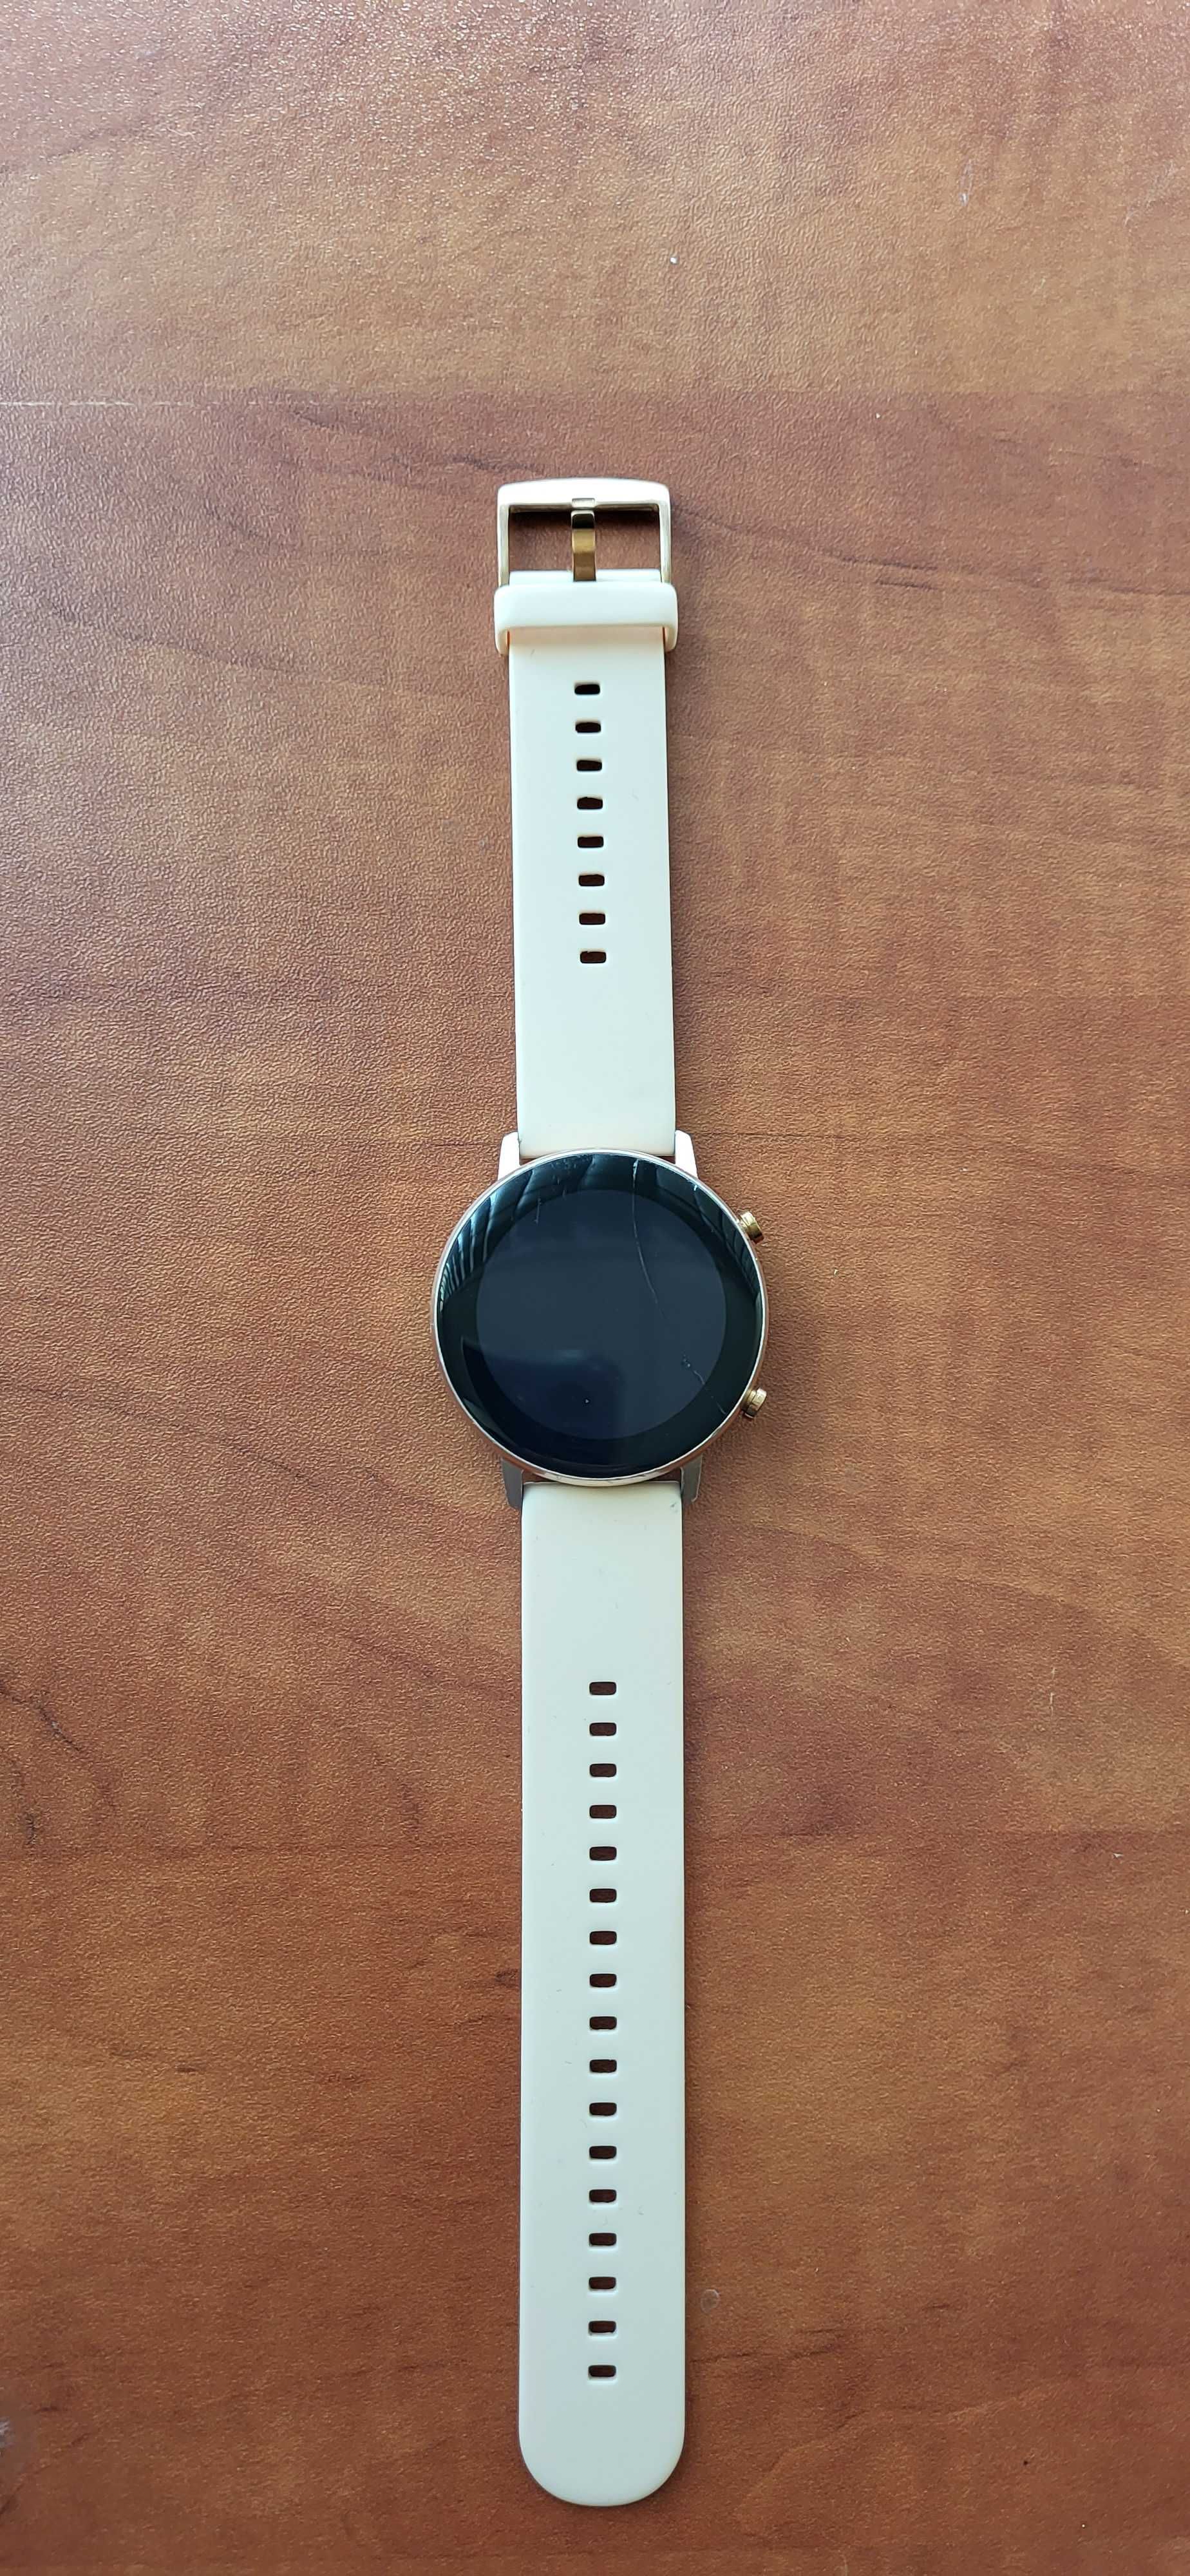 smartwatch damski (DT96) sprawny z małym defektem